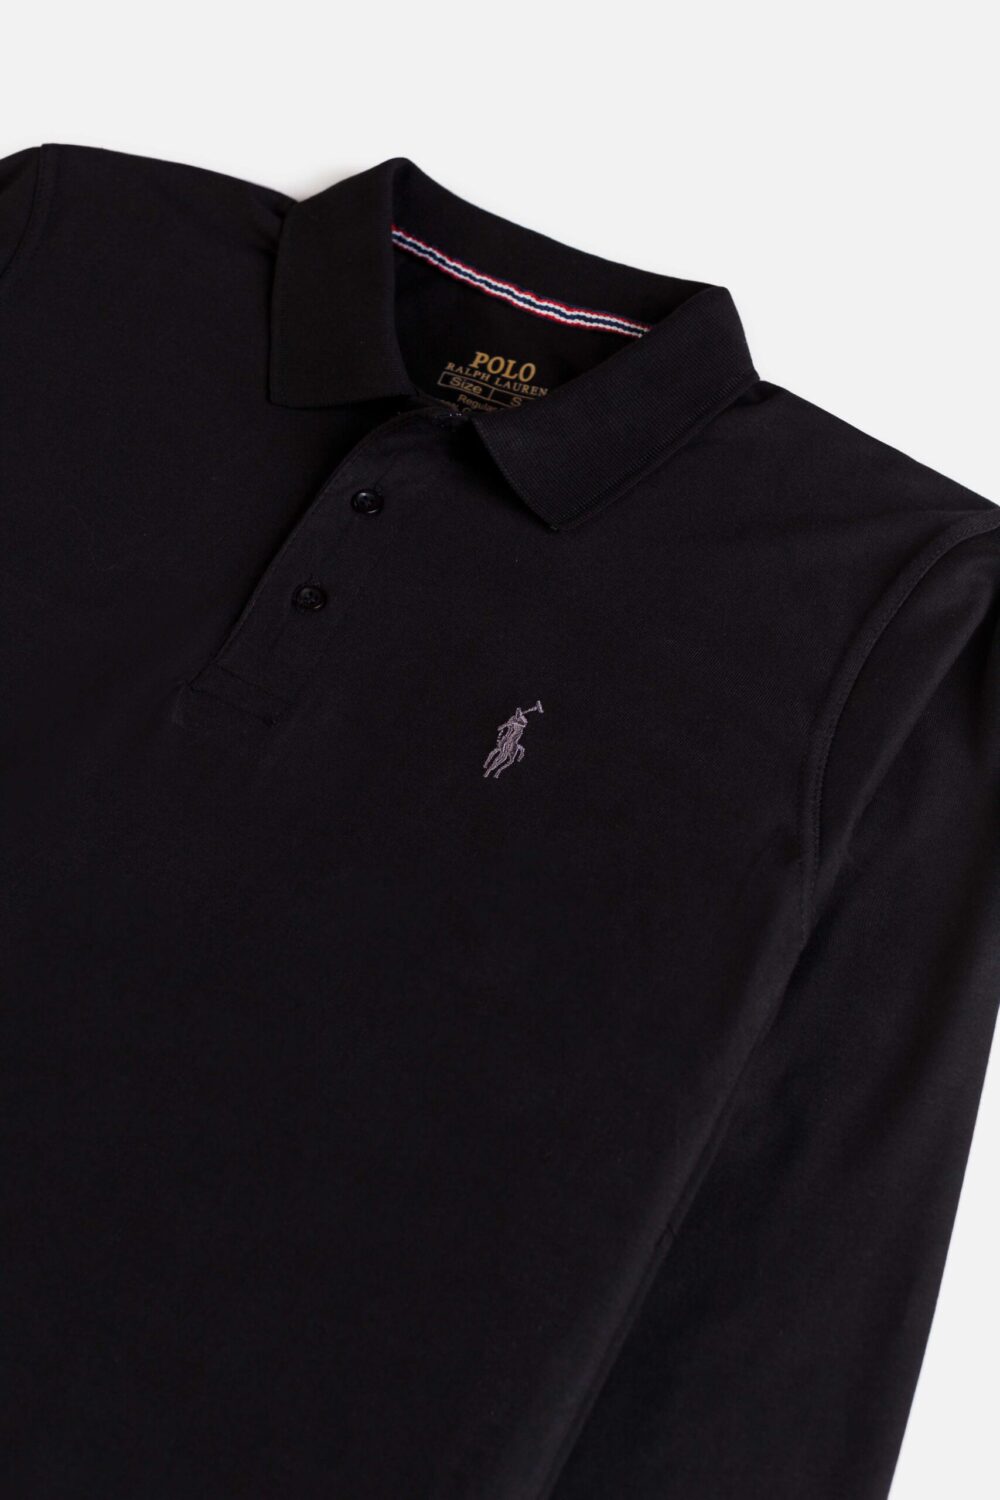 RL Premium Cotton Full Polo – Black